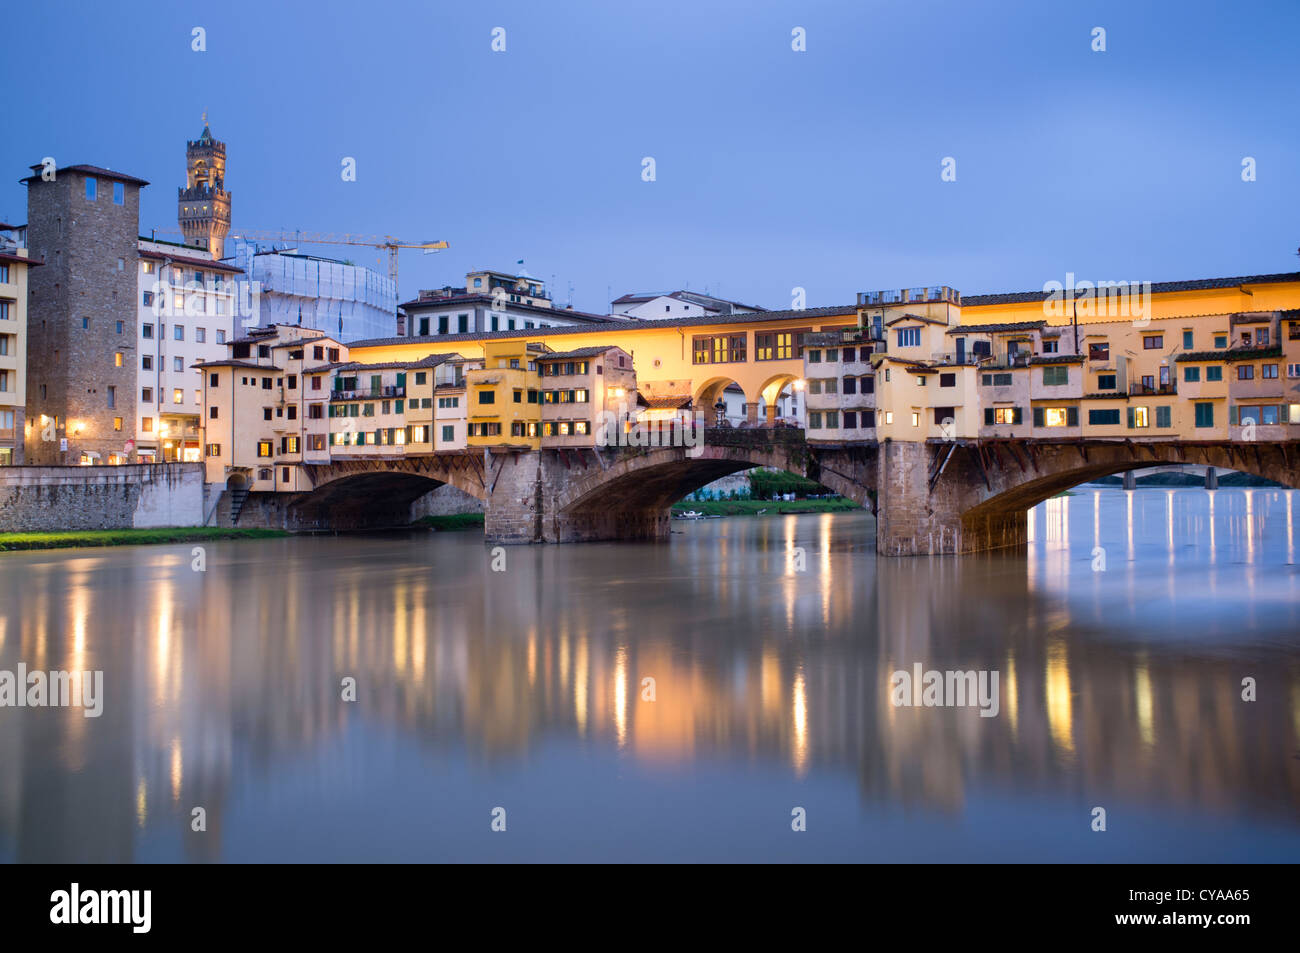 Abends Blick auf historische Ponte Vecchio Brücke über Fluss Arno in Florenz Italien Stockfoto